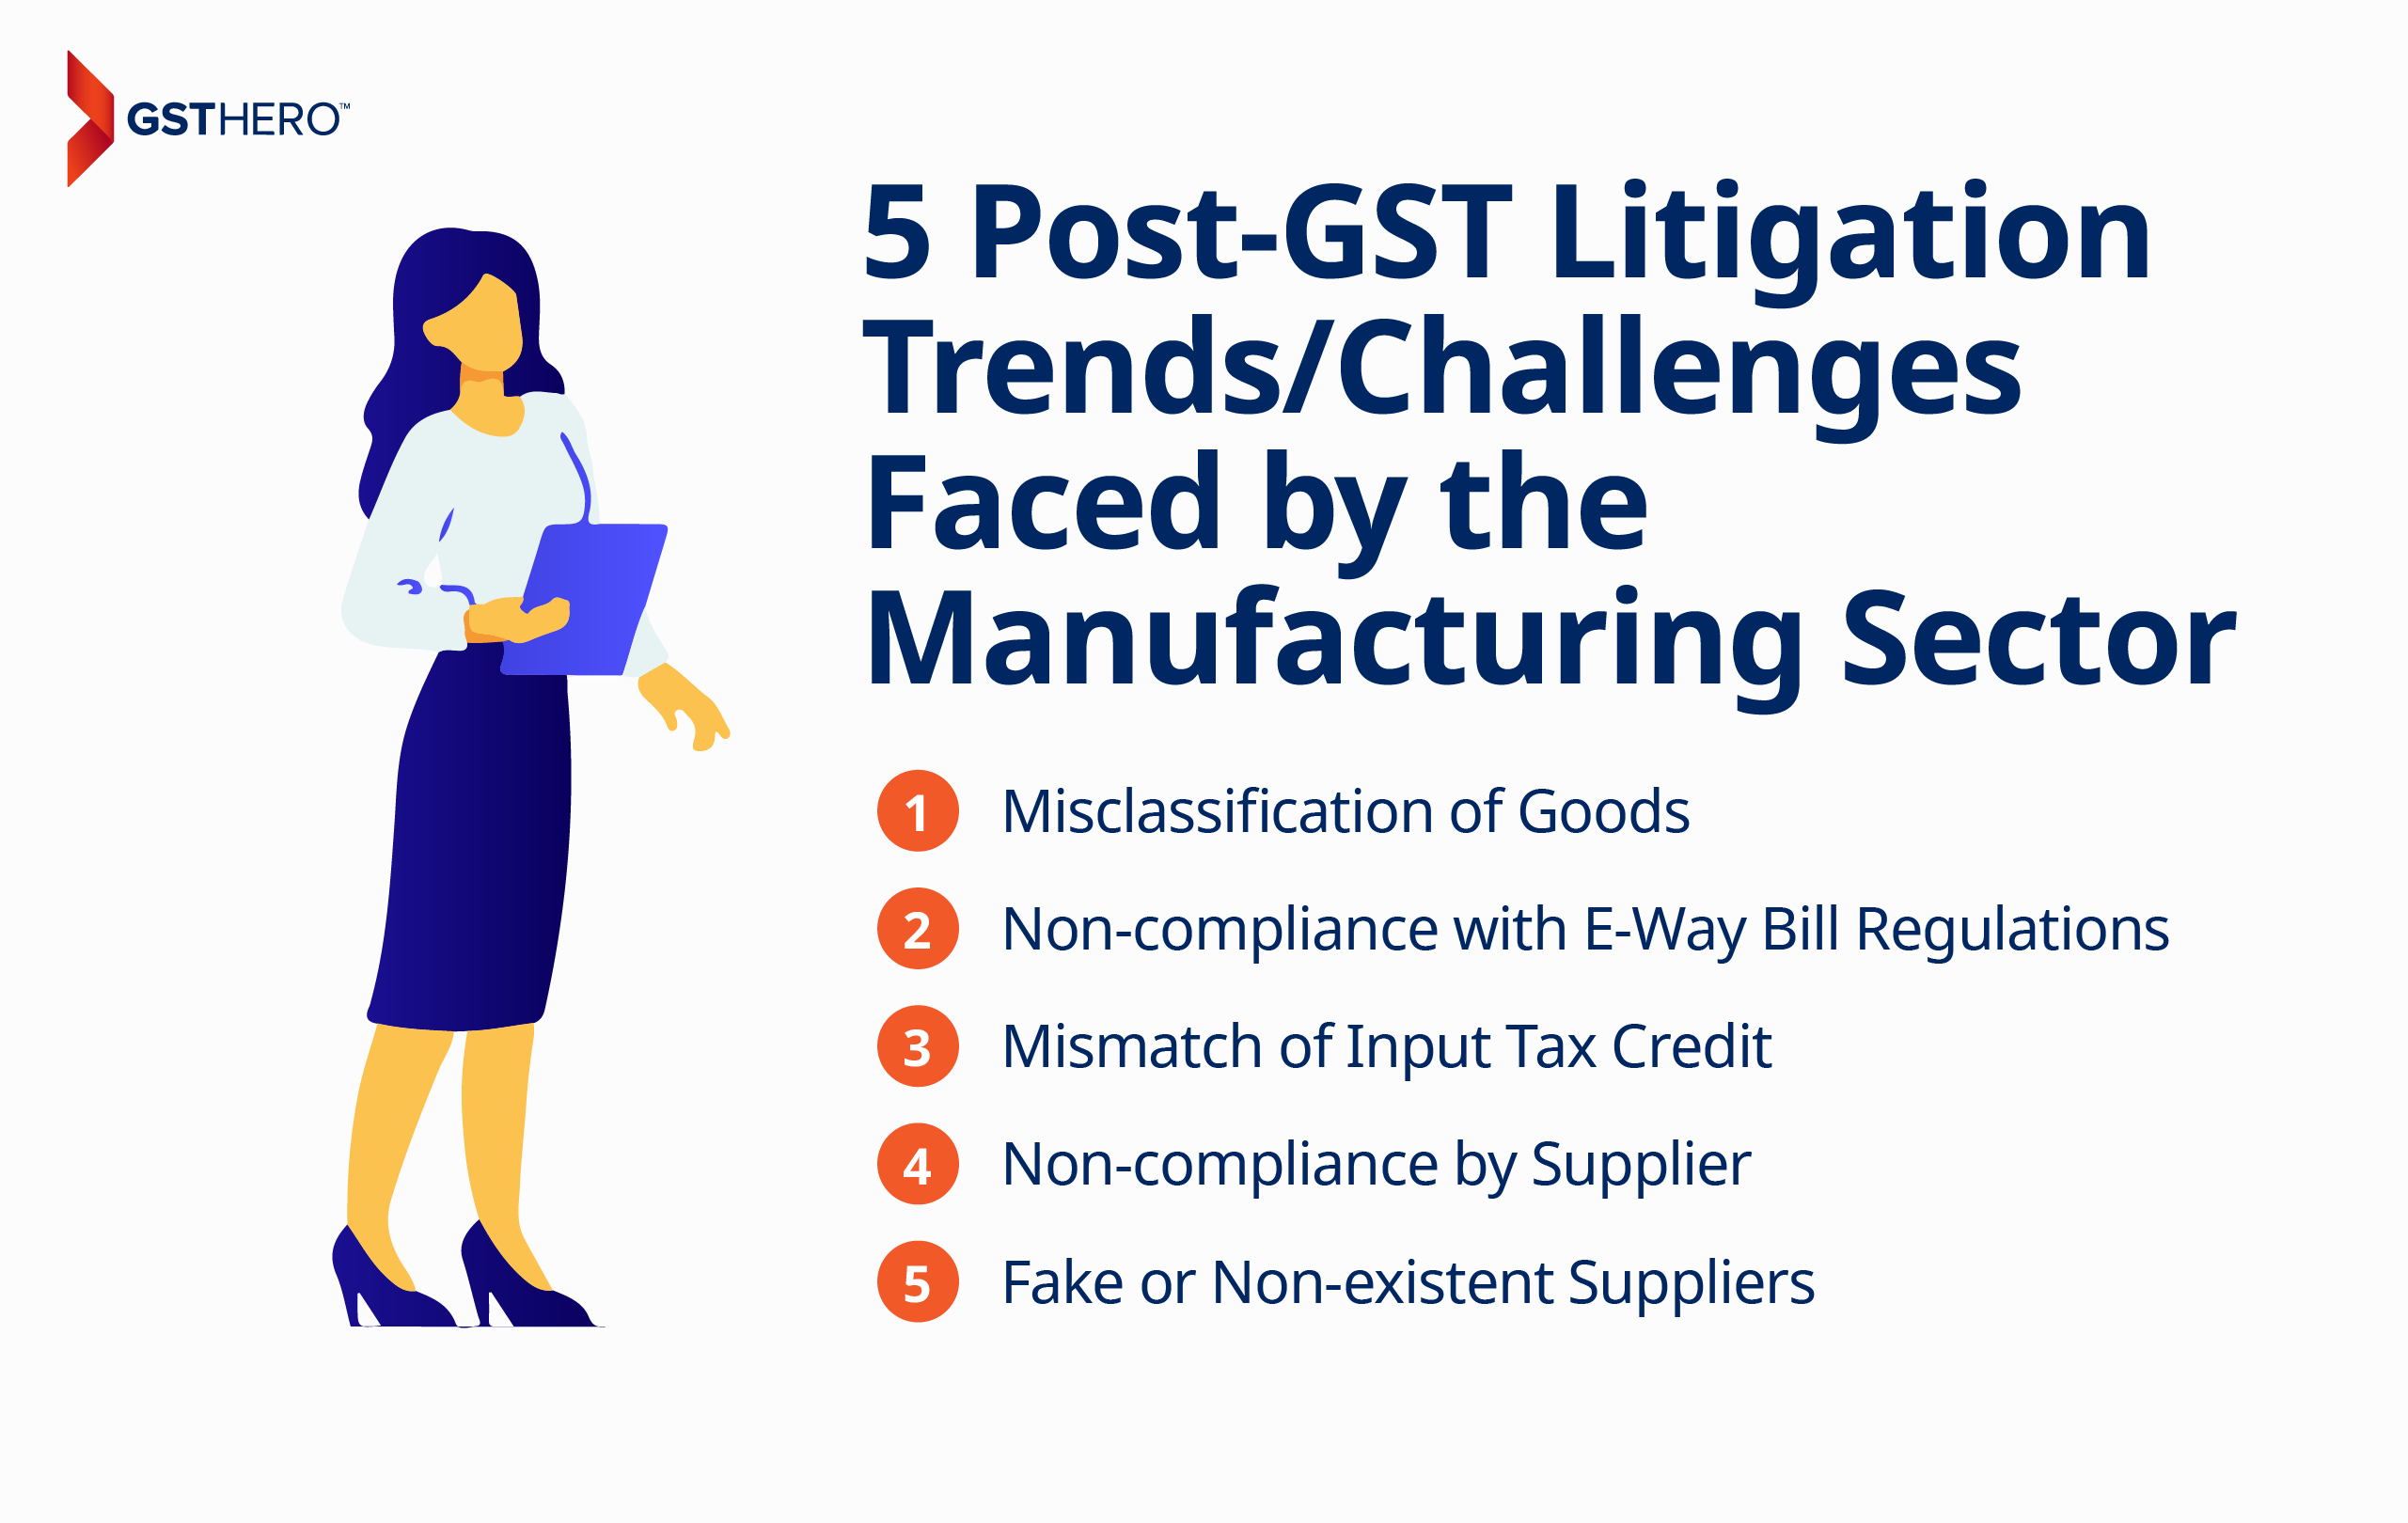 Post GST litigation trends